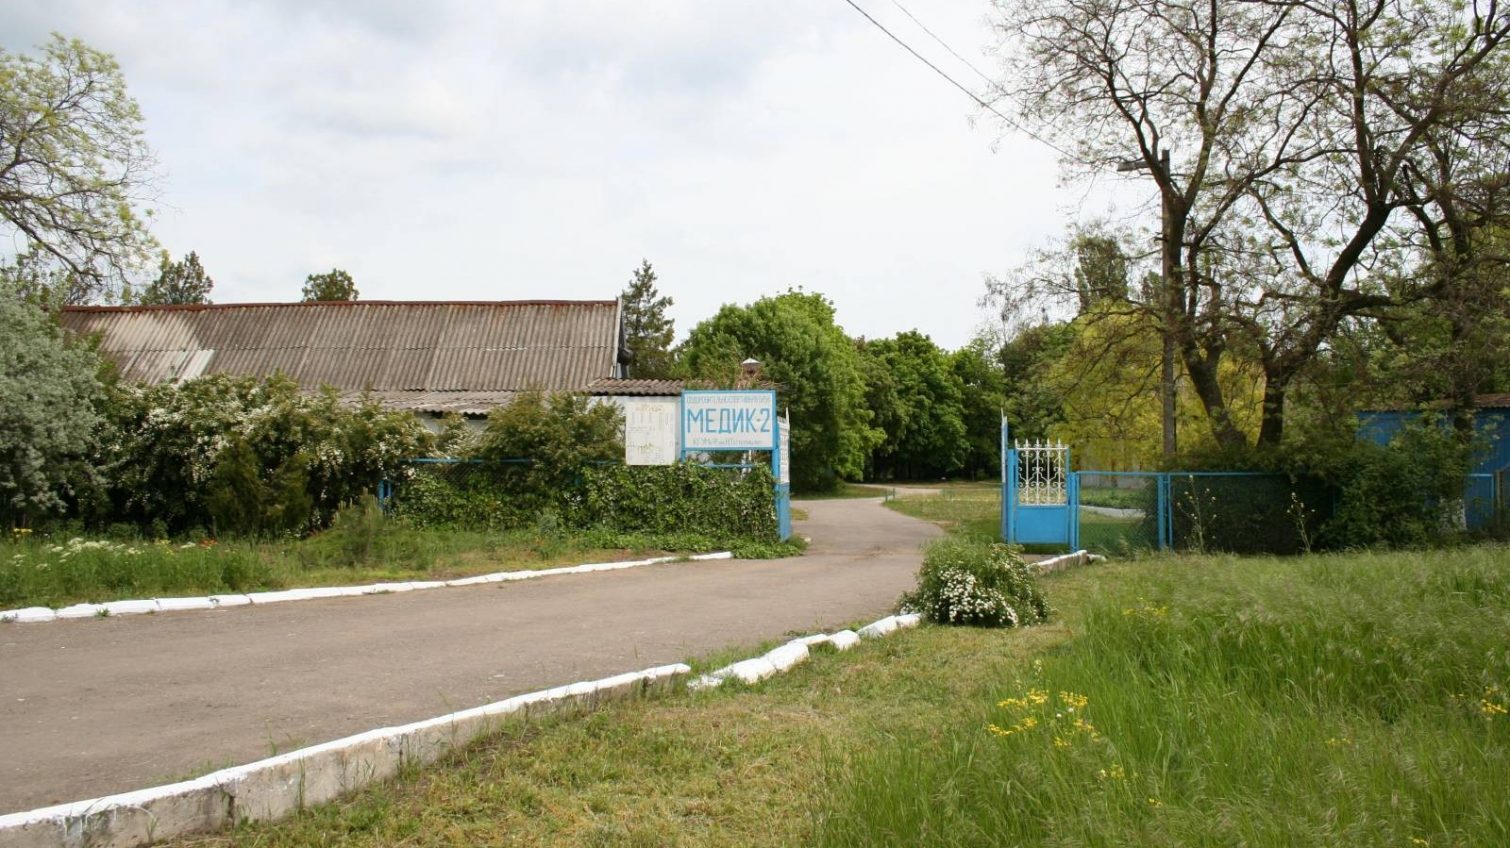 Оздоровительный лагерь в Сергеевке, где отравилось более 50 детей, закроют: там обнаружена дизентерия «фото»